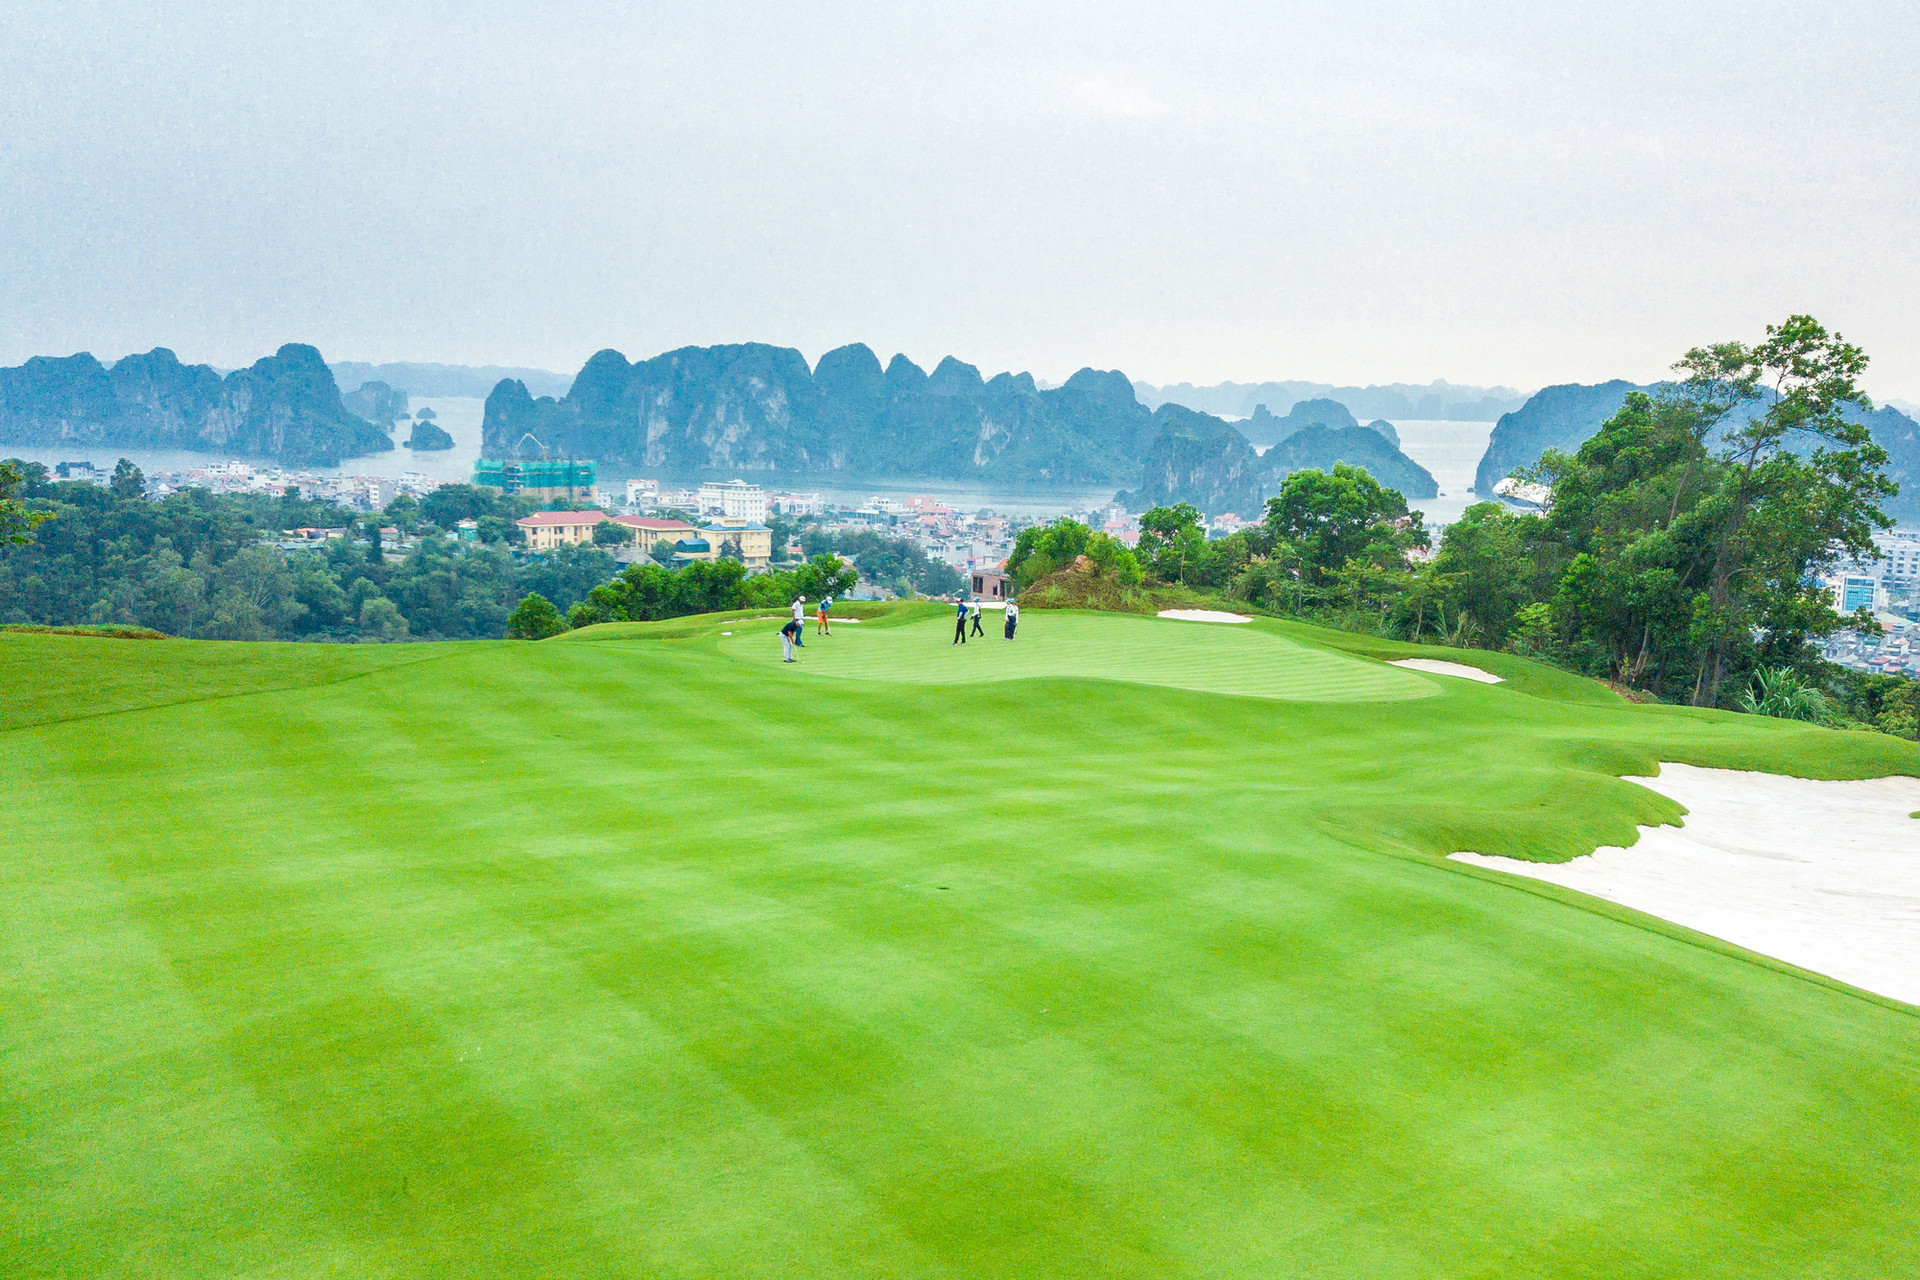 Hội golf Quảng Ninh tổ chức giải đấu chào mừng ngày thành lập tỉnh - Ảnh 1.